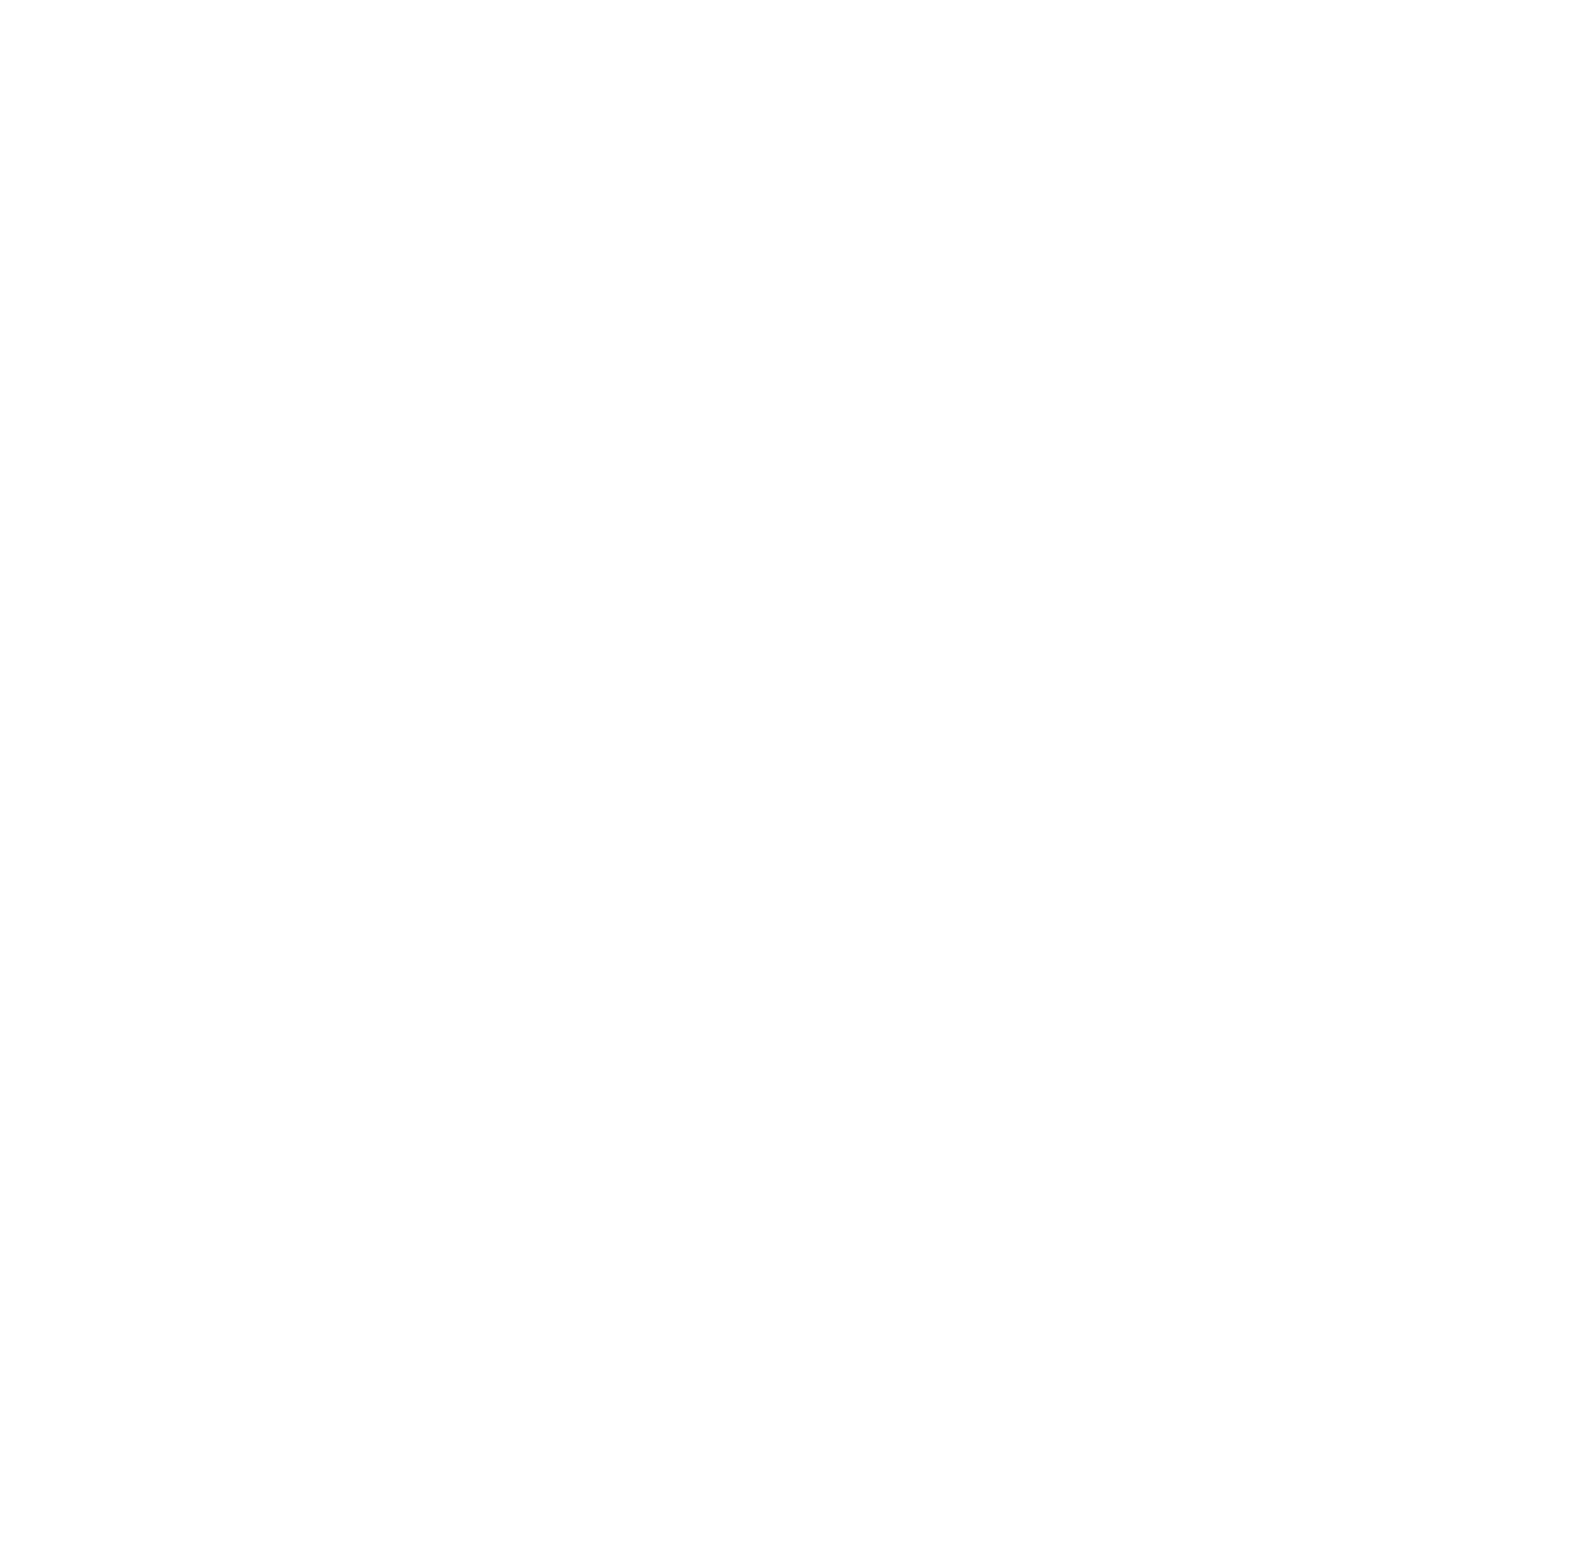 DKSH Holding logo for dark backgrounds (transparent PNG)